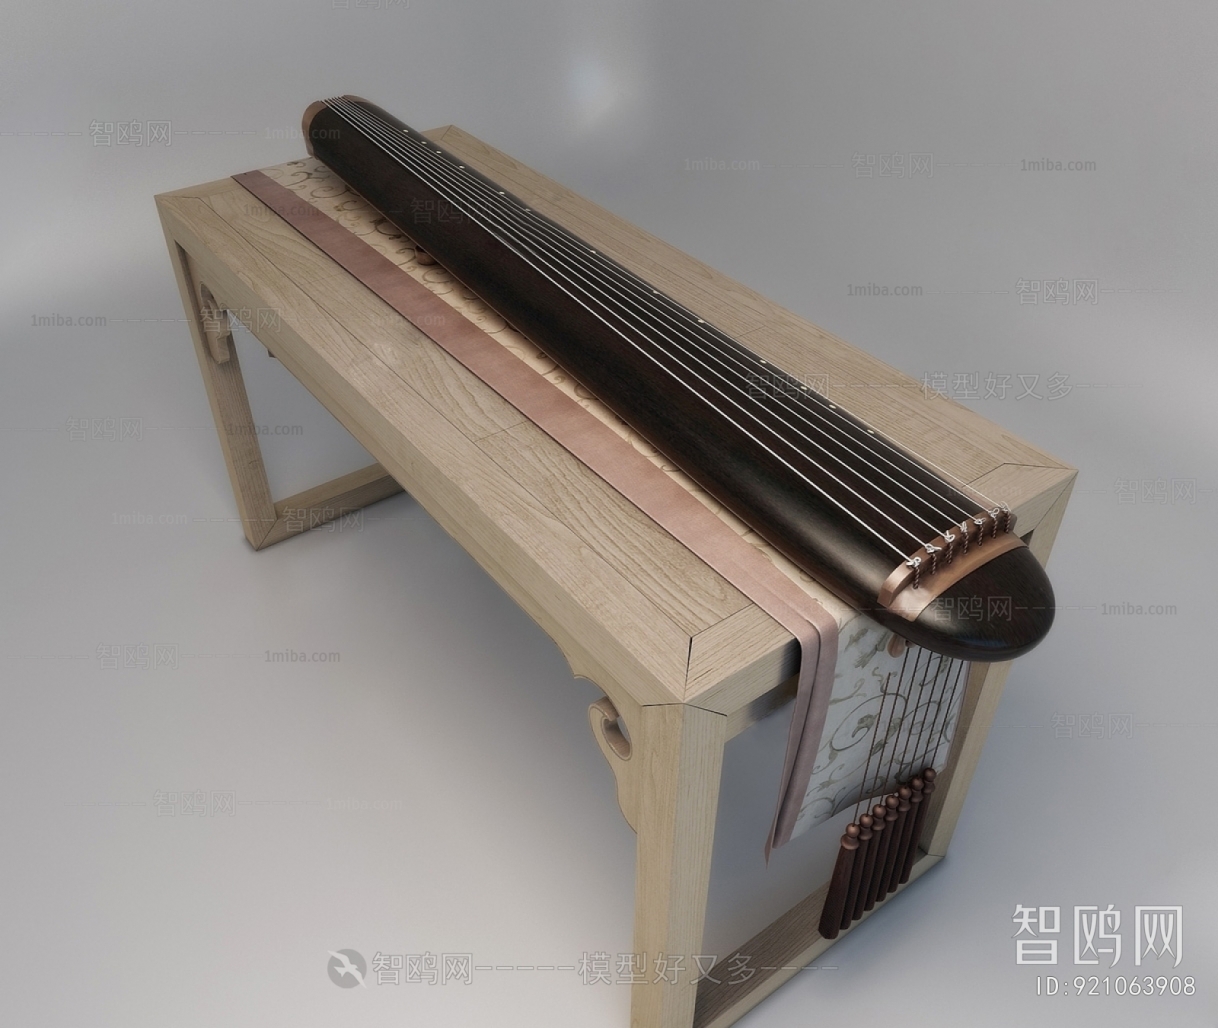 Chinese Style Music Equipment